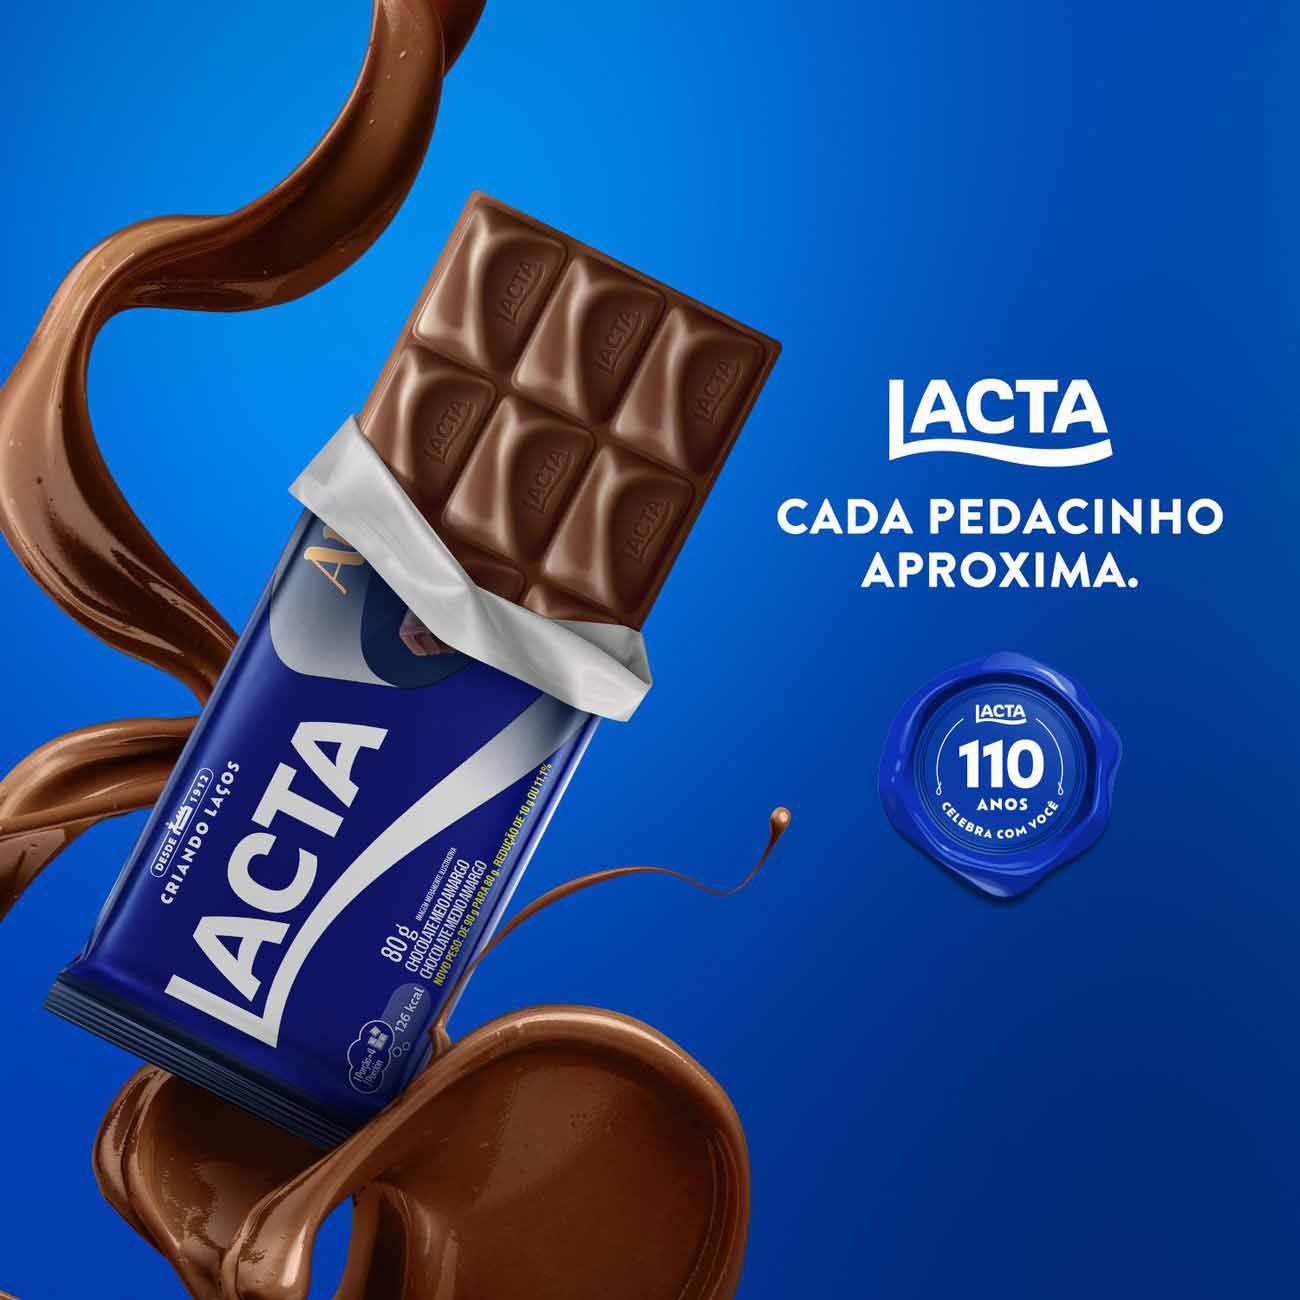 Chocolate Amaro 40% Cacau Barra 80g